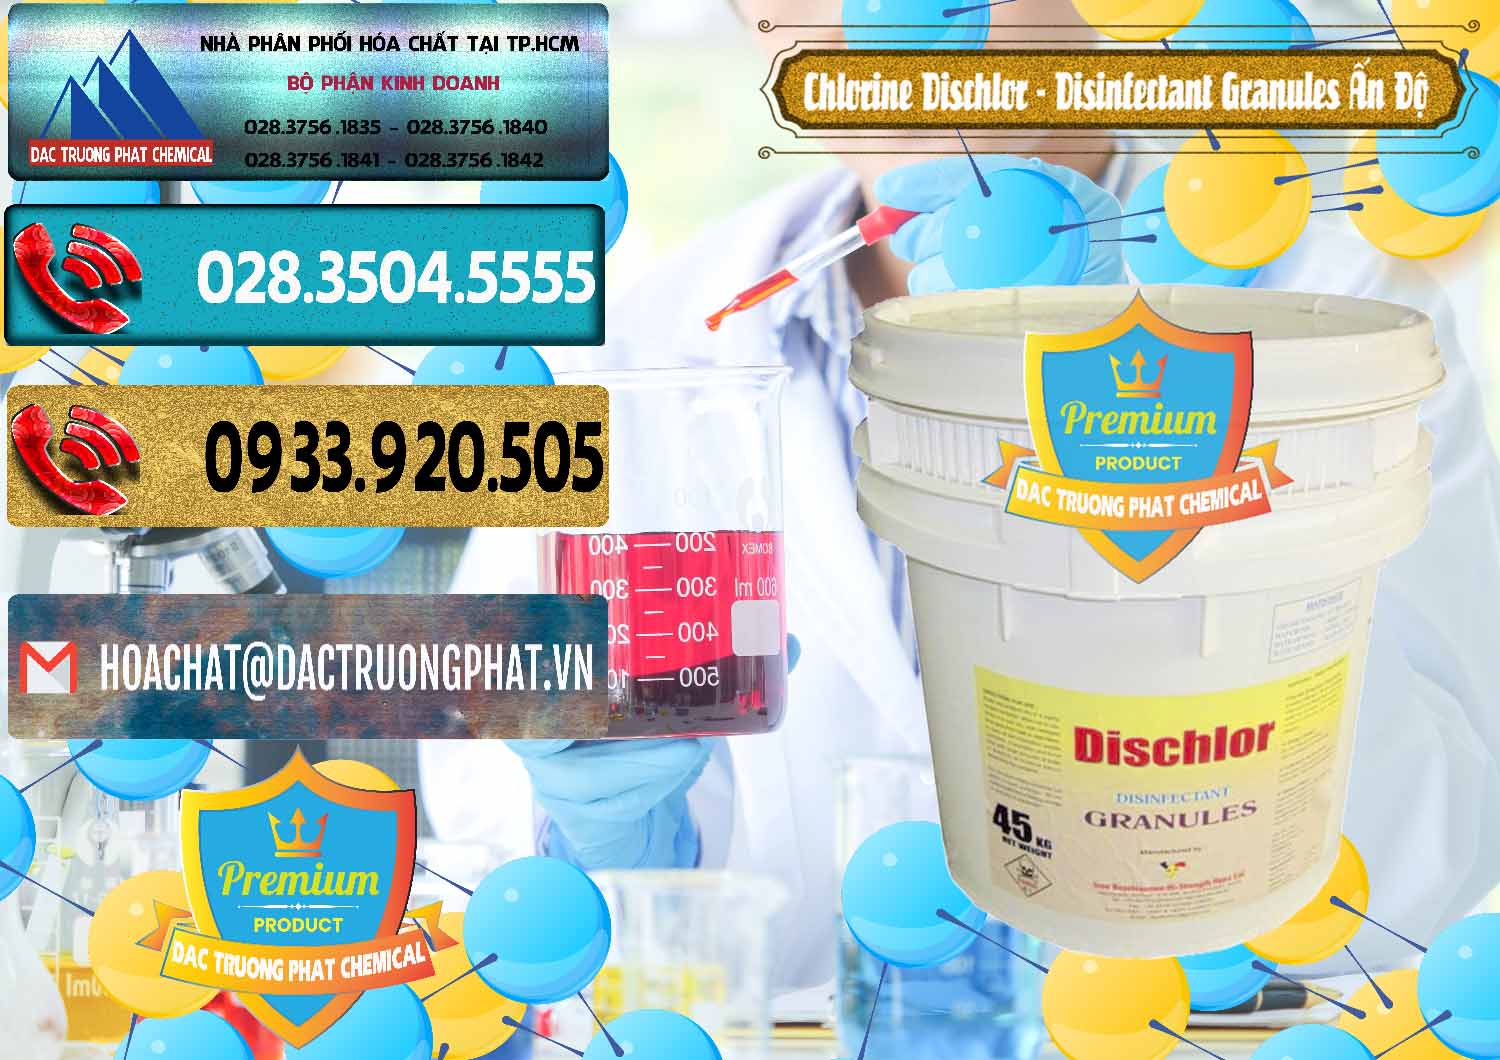 Cty chuyên bán và phân phối Chlorine – Clorin 70% Dischlor - Disinfectant Granules Ấn Độ India - 0248 - Cty bán - phân phối hóa chất tại TP.HCM - hoachatdetnhuom.com